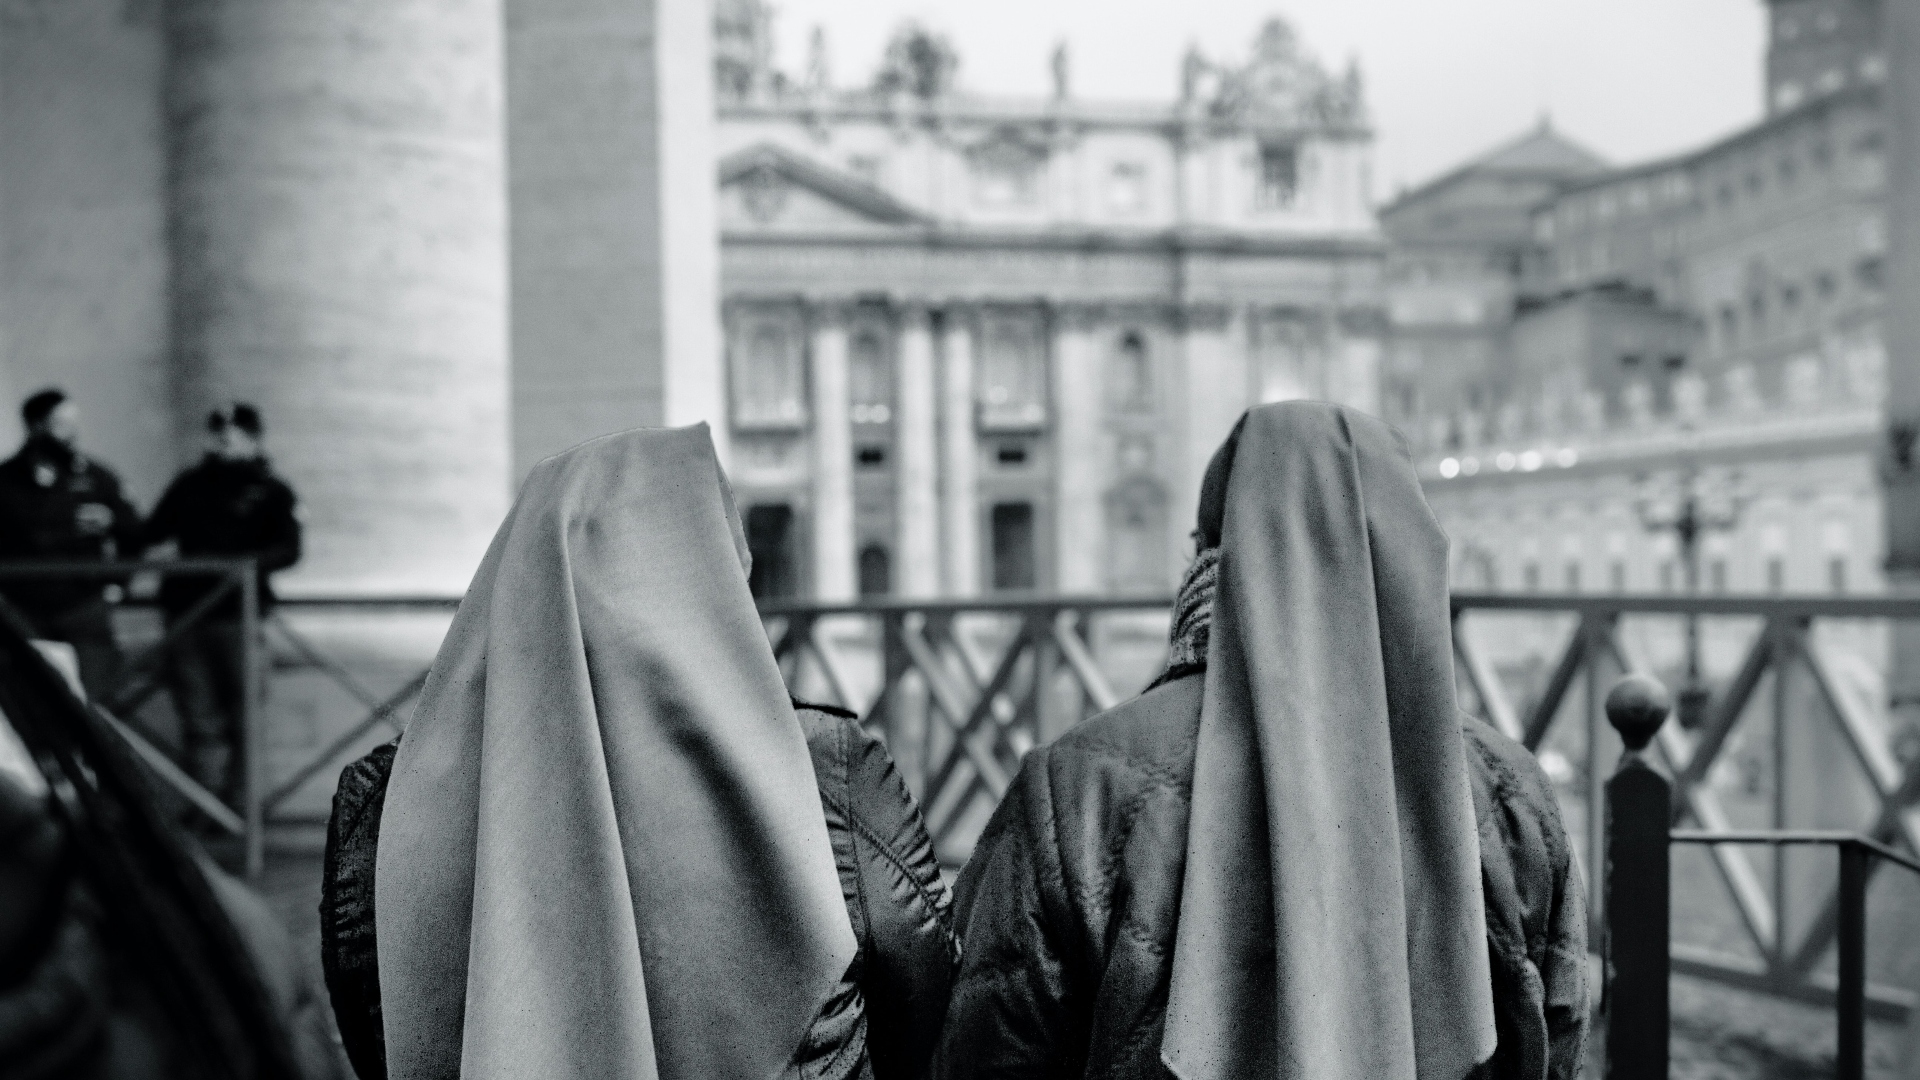 A Vatikán titkai és rejtélyei